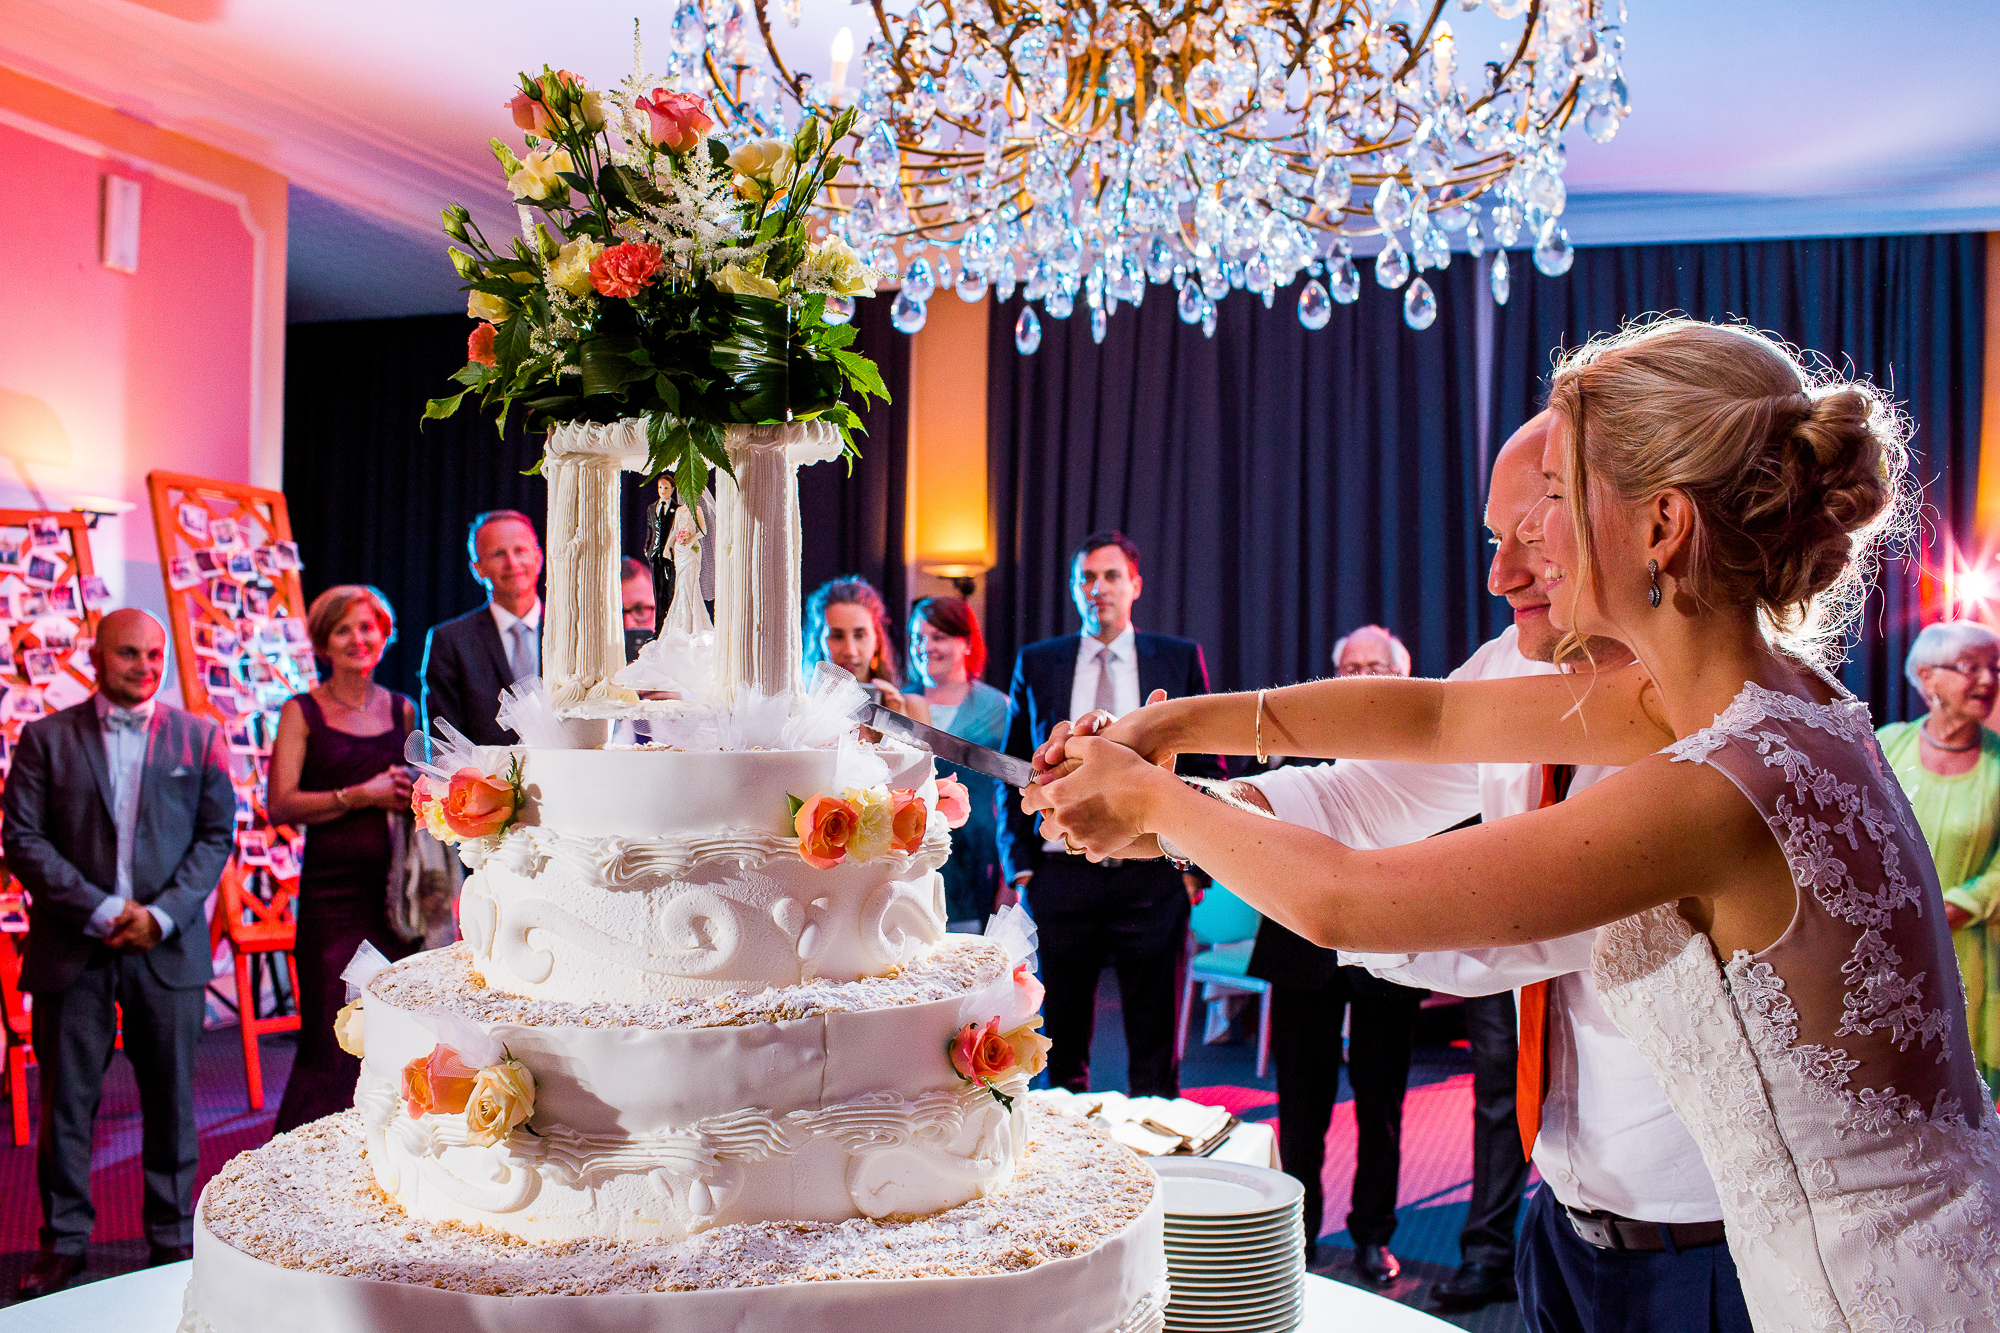 The italien wedding cake , hochzeitstorte, cake, itaienisch, kuchen, hochzeitskuchen, dekoration, anschneiden, Hochzeitspaar, excited, in love, happy, fotografie